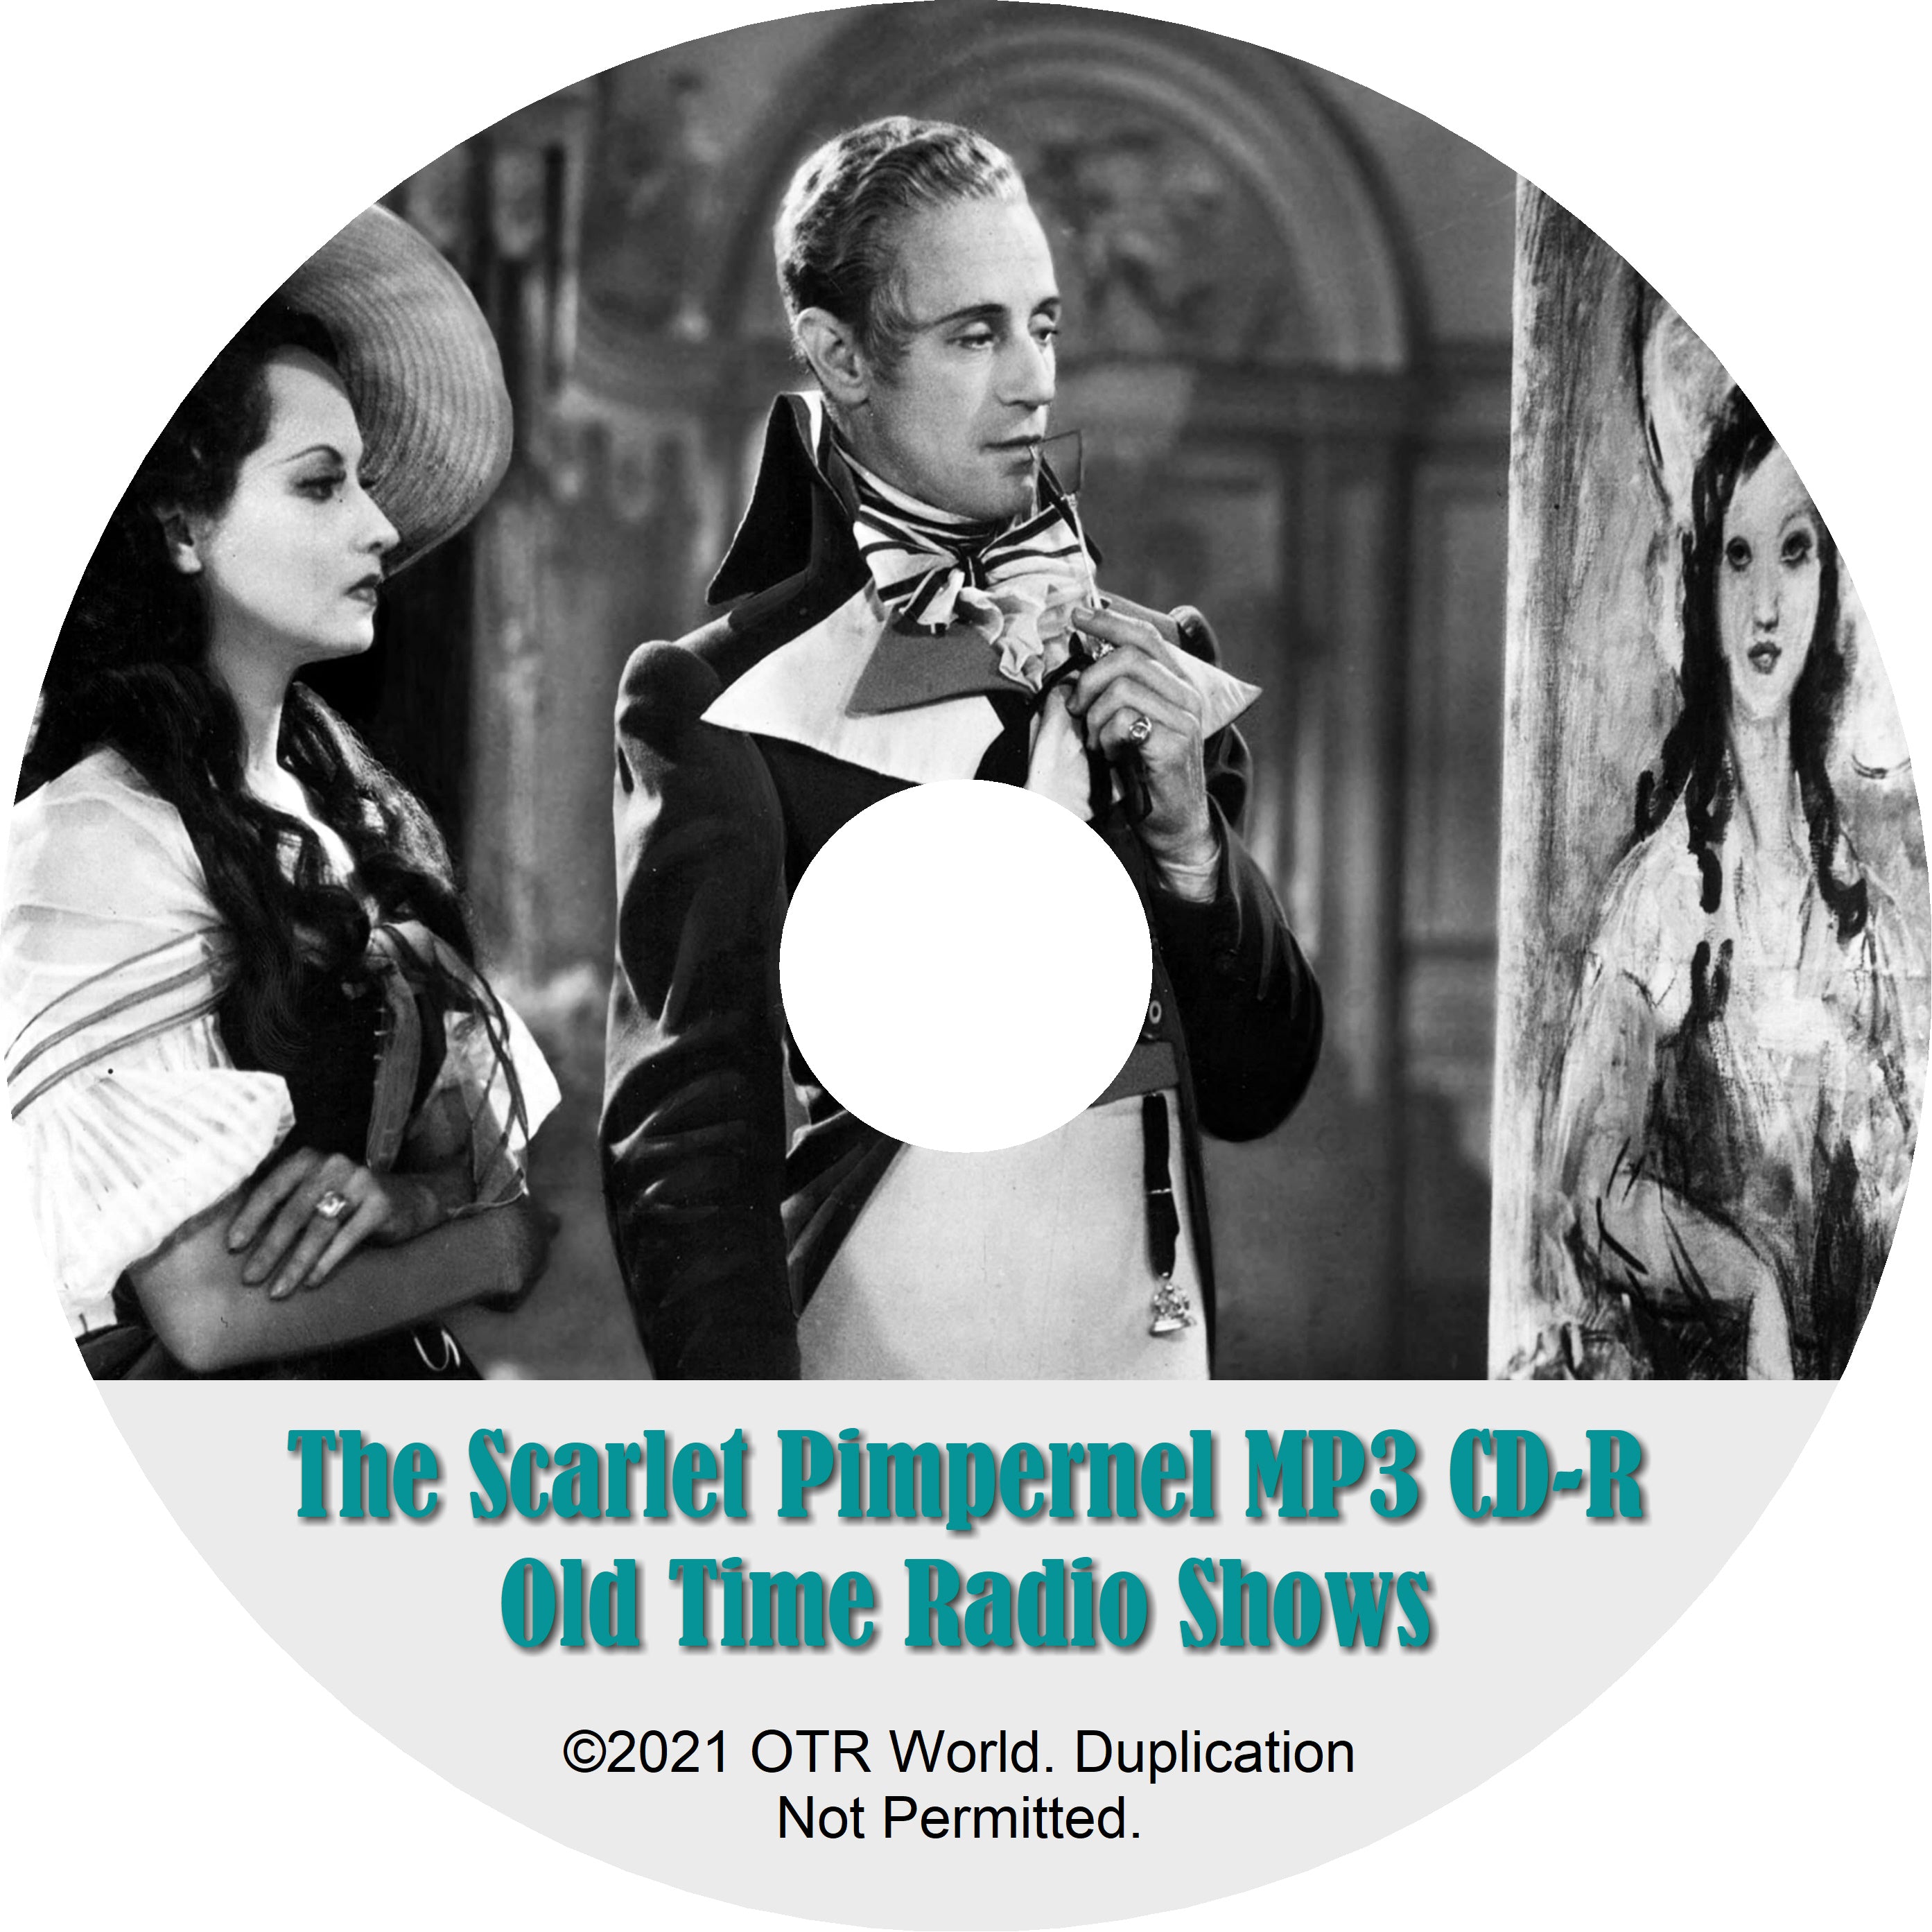 The Scarlet Pimpernel OTRS OTR Old Time Radio Shows MP3 On CD-R 50 Episodes